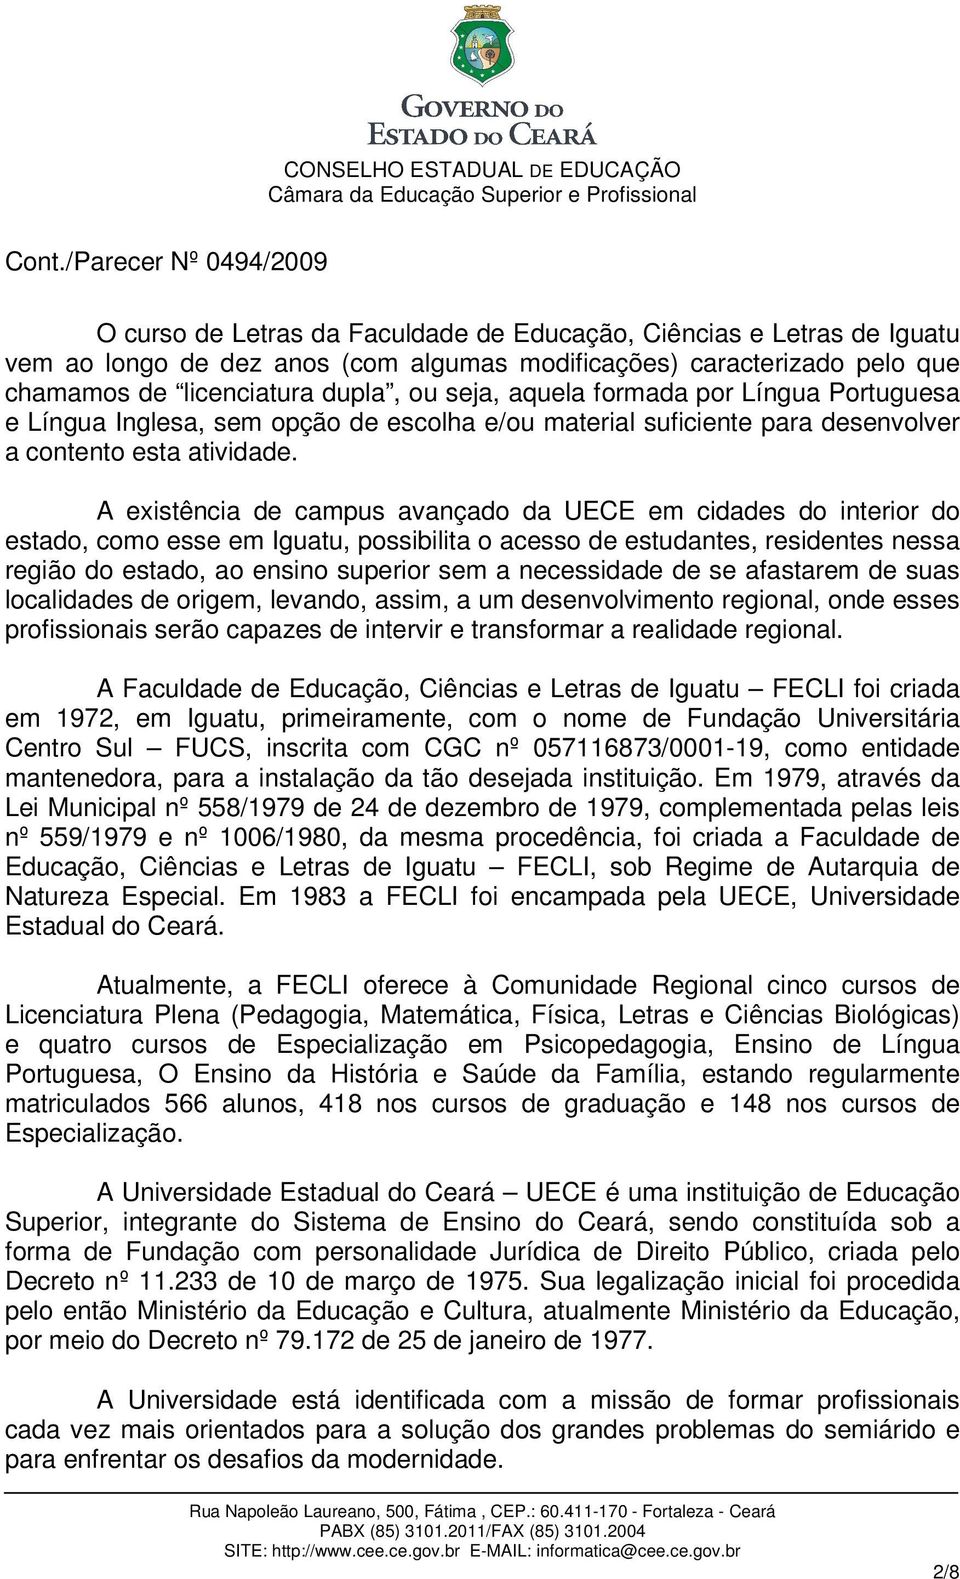 A existência de campus avançado da UECE em cidades do interior do estado, como esse em Iguatu, possibilita o acesso de estudantes, residentes nessa região do estado, ao ensino superior sem a